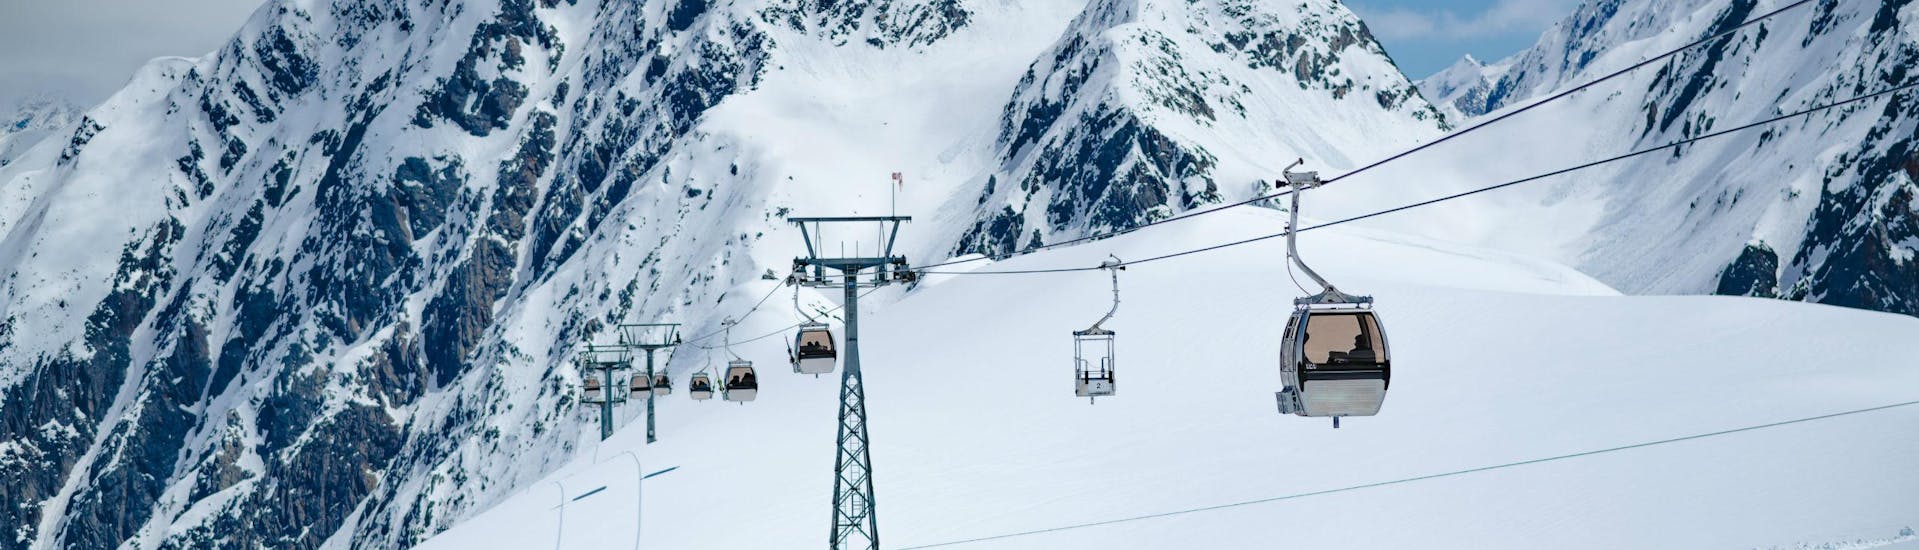 Ein Bild einer Gondel am Stubaier Gletscher, wo Skischulen aus dem Stubaital ihre Skikurse ausüben.